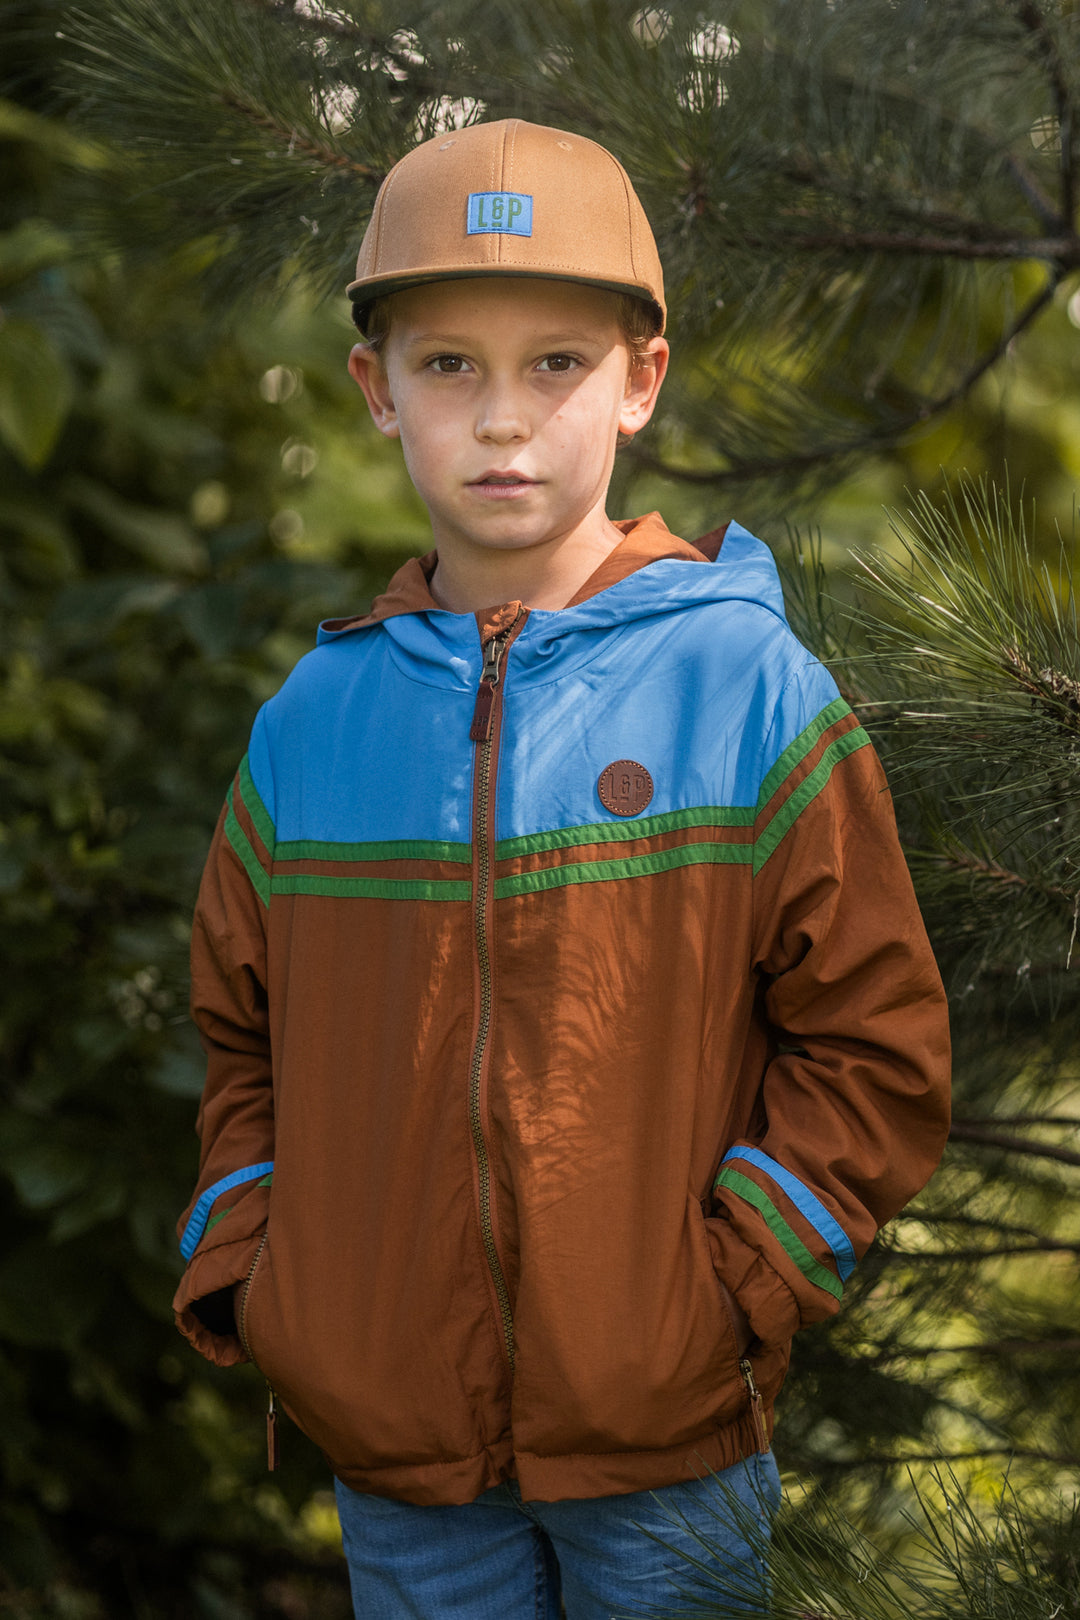 Fleece Lined outwear jacket [123] [Kids] (Valky 3.0)